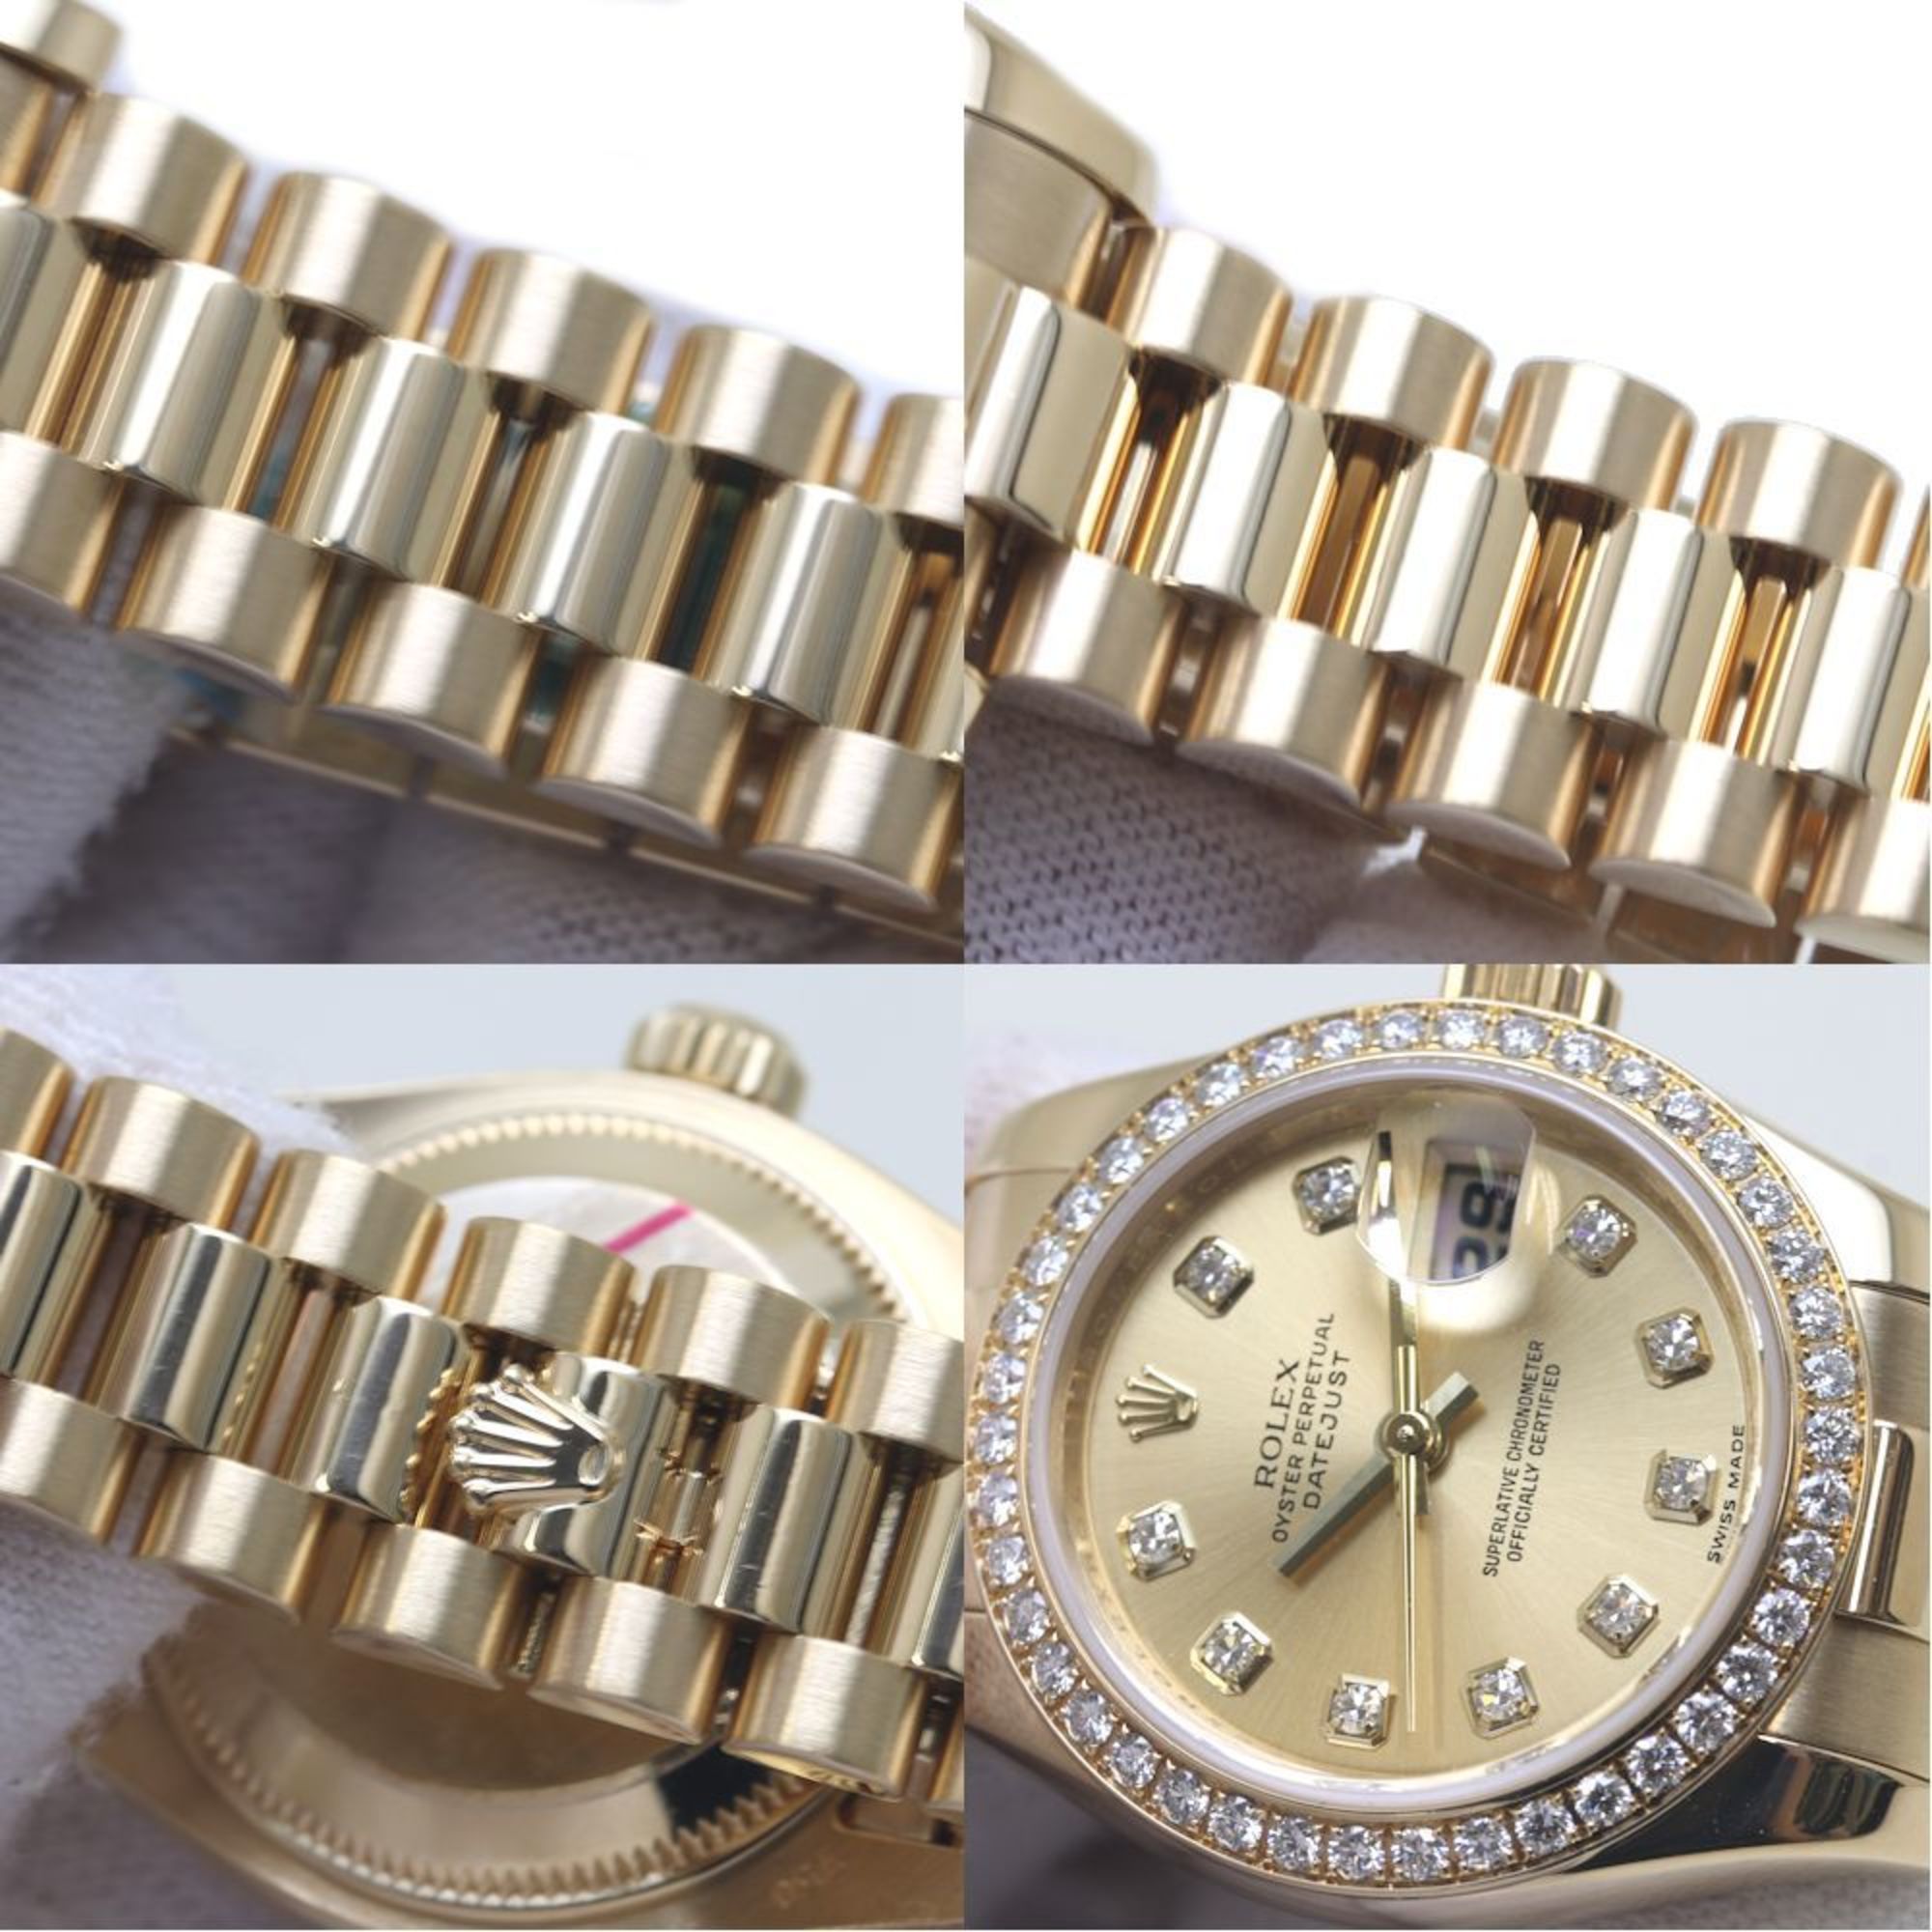 ROLEX Rolex Datejust 179138G Bezel Diamond 10P K18YG Yellow Gold Ladies 39485 Watch